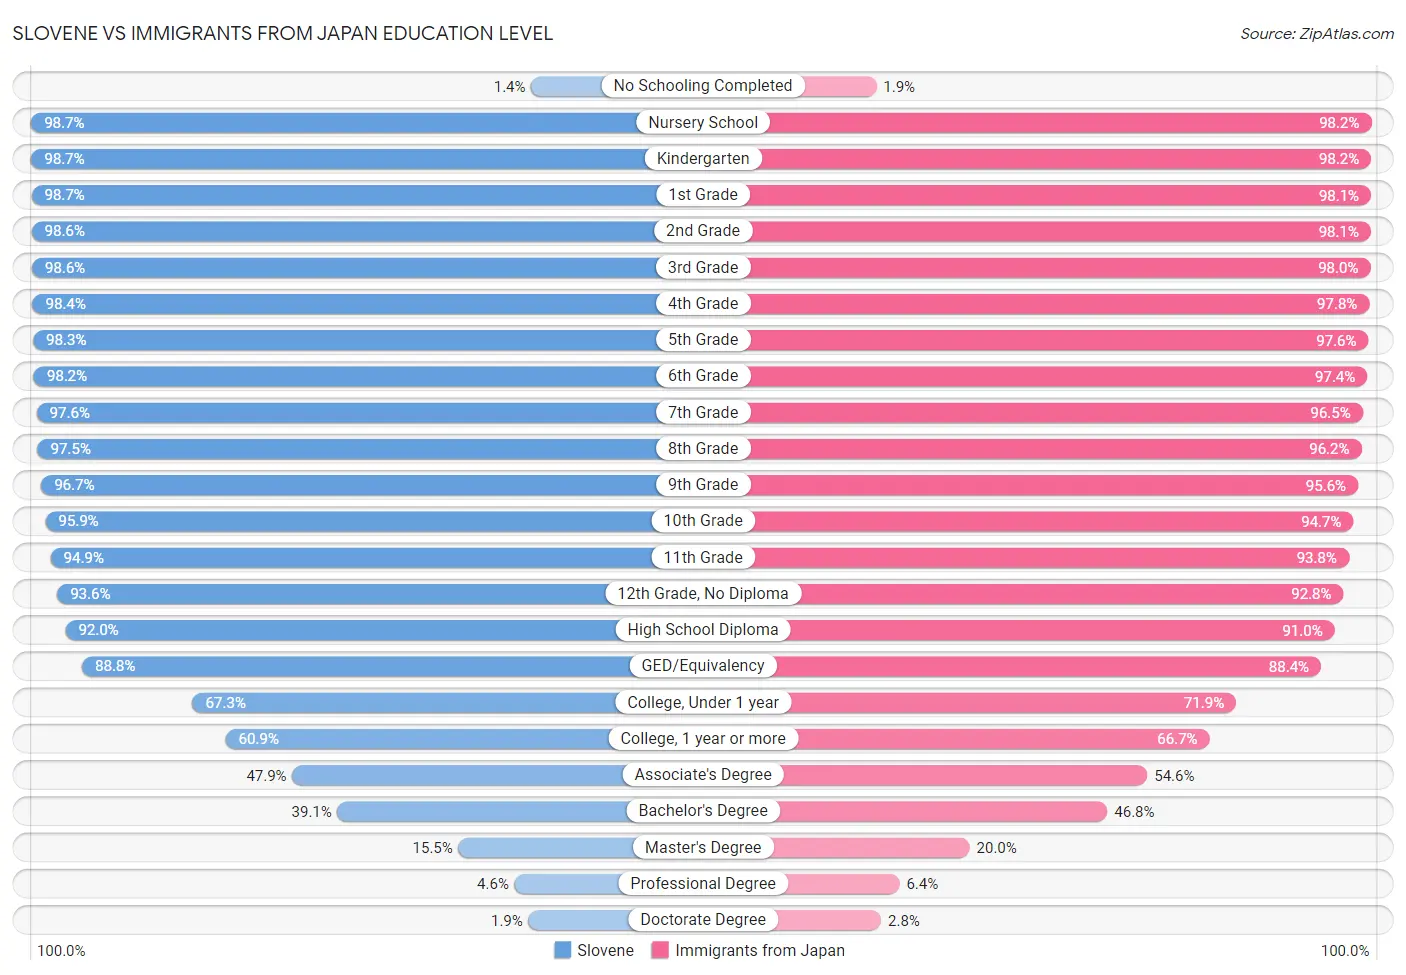 Slovene vs Immigrants from Japan Education Level